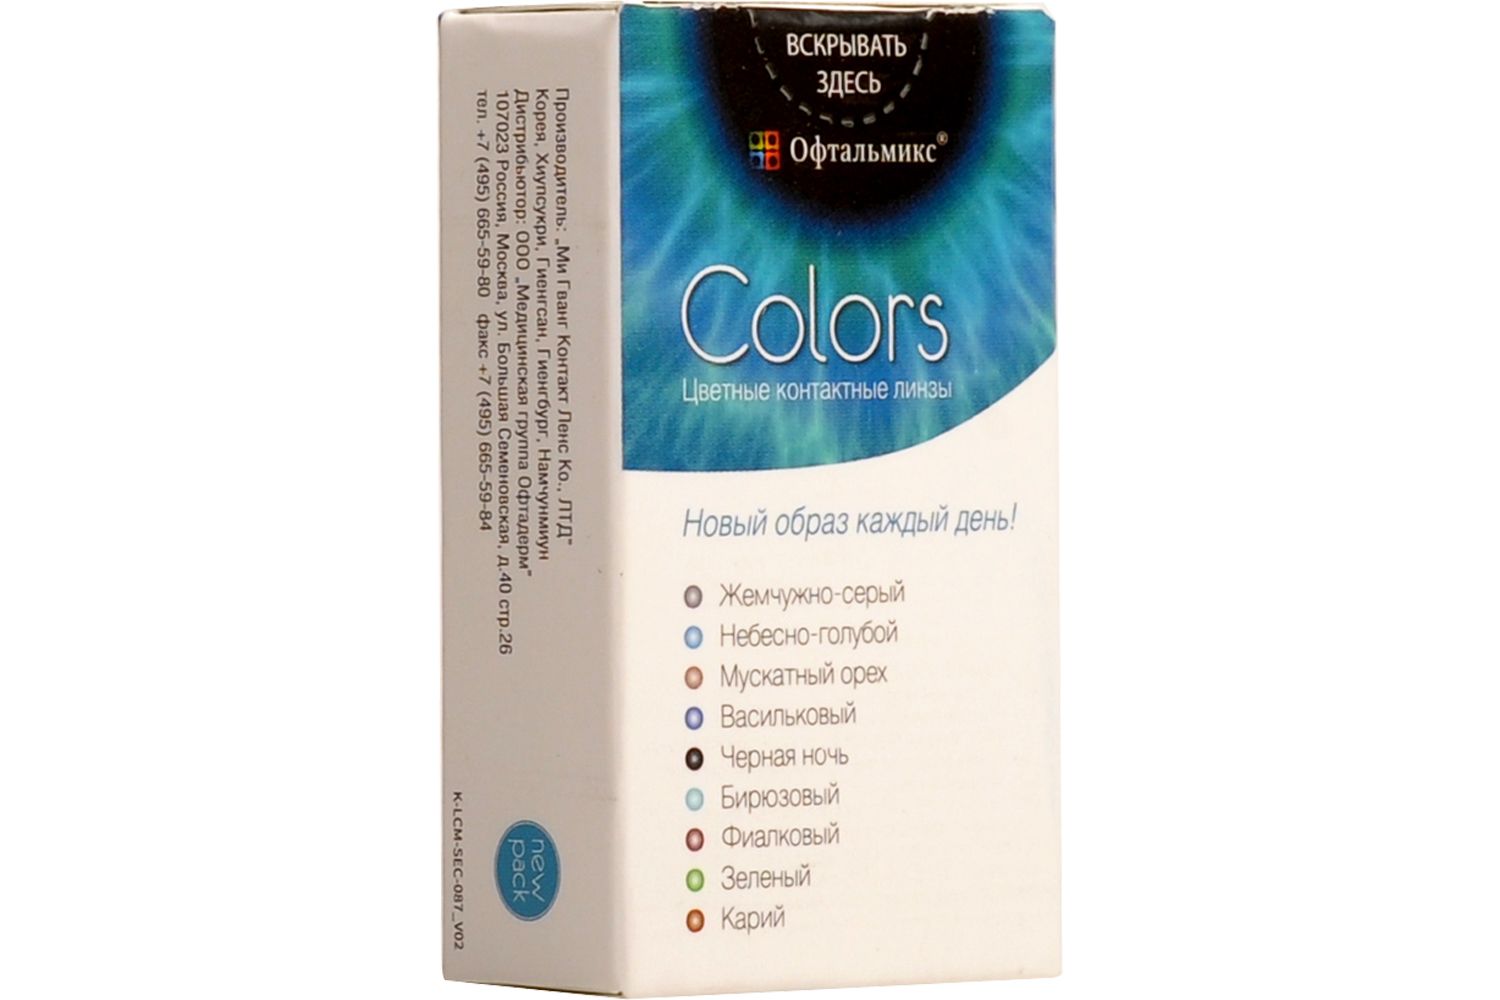 Купить Colors 2 линзы, Цветные контактные линзы Офтальмикс Colors, 2 шт. PWR -8, 50, R 8.6, Sky Blue